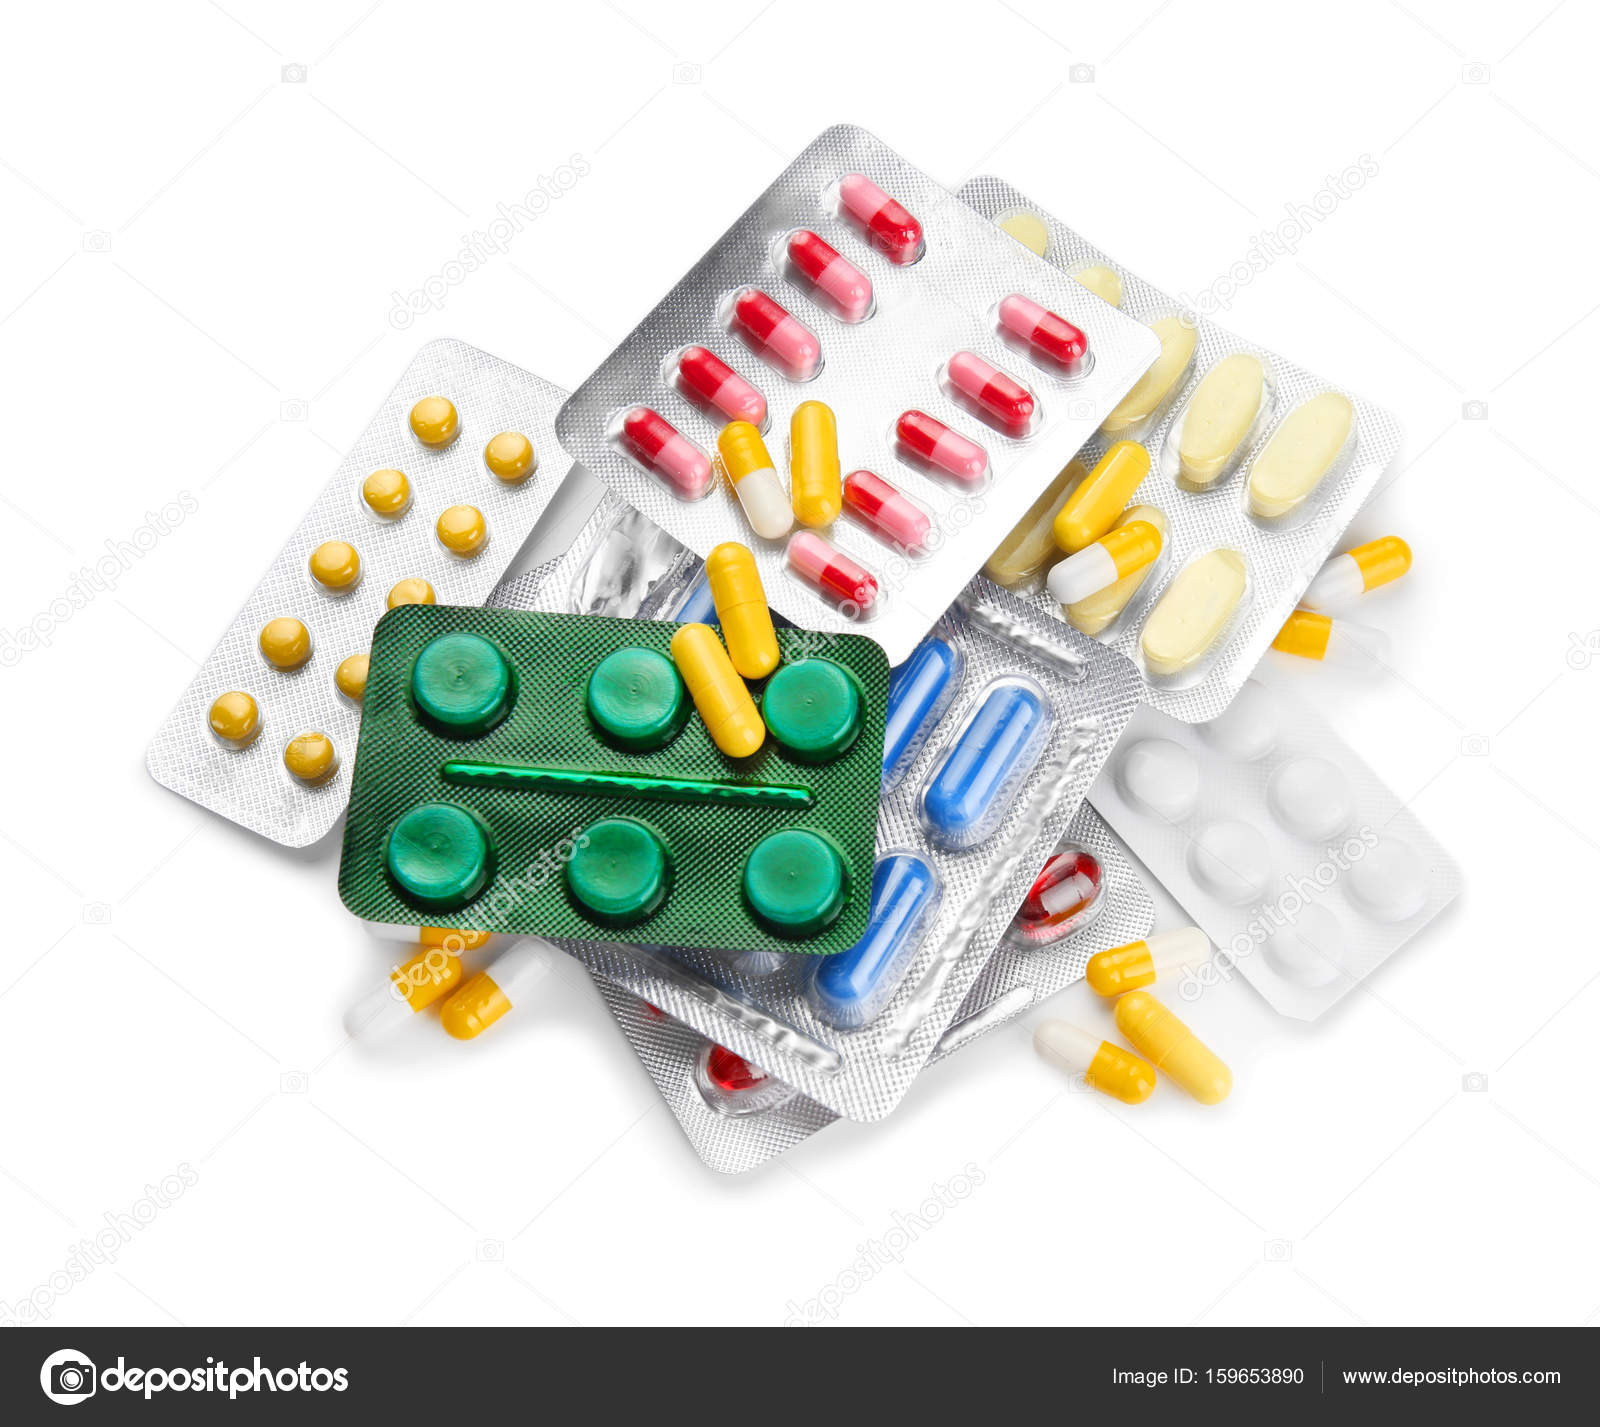 Packs of pills photo